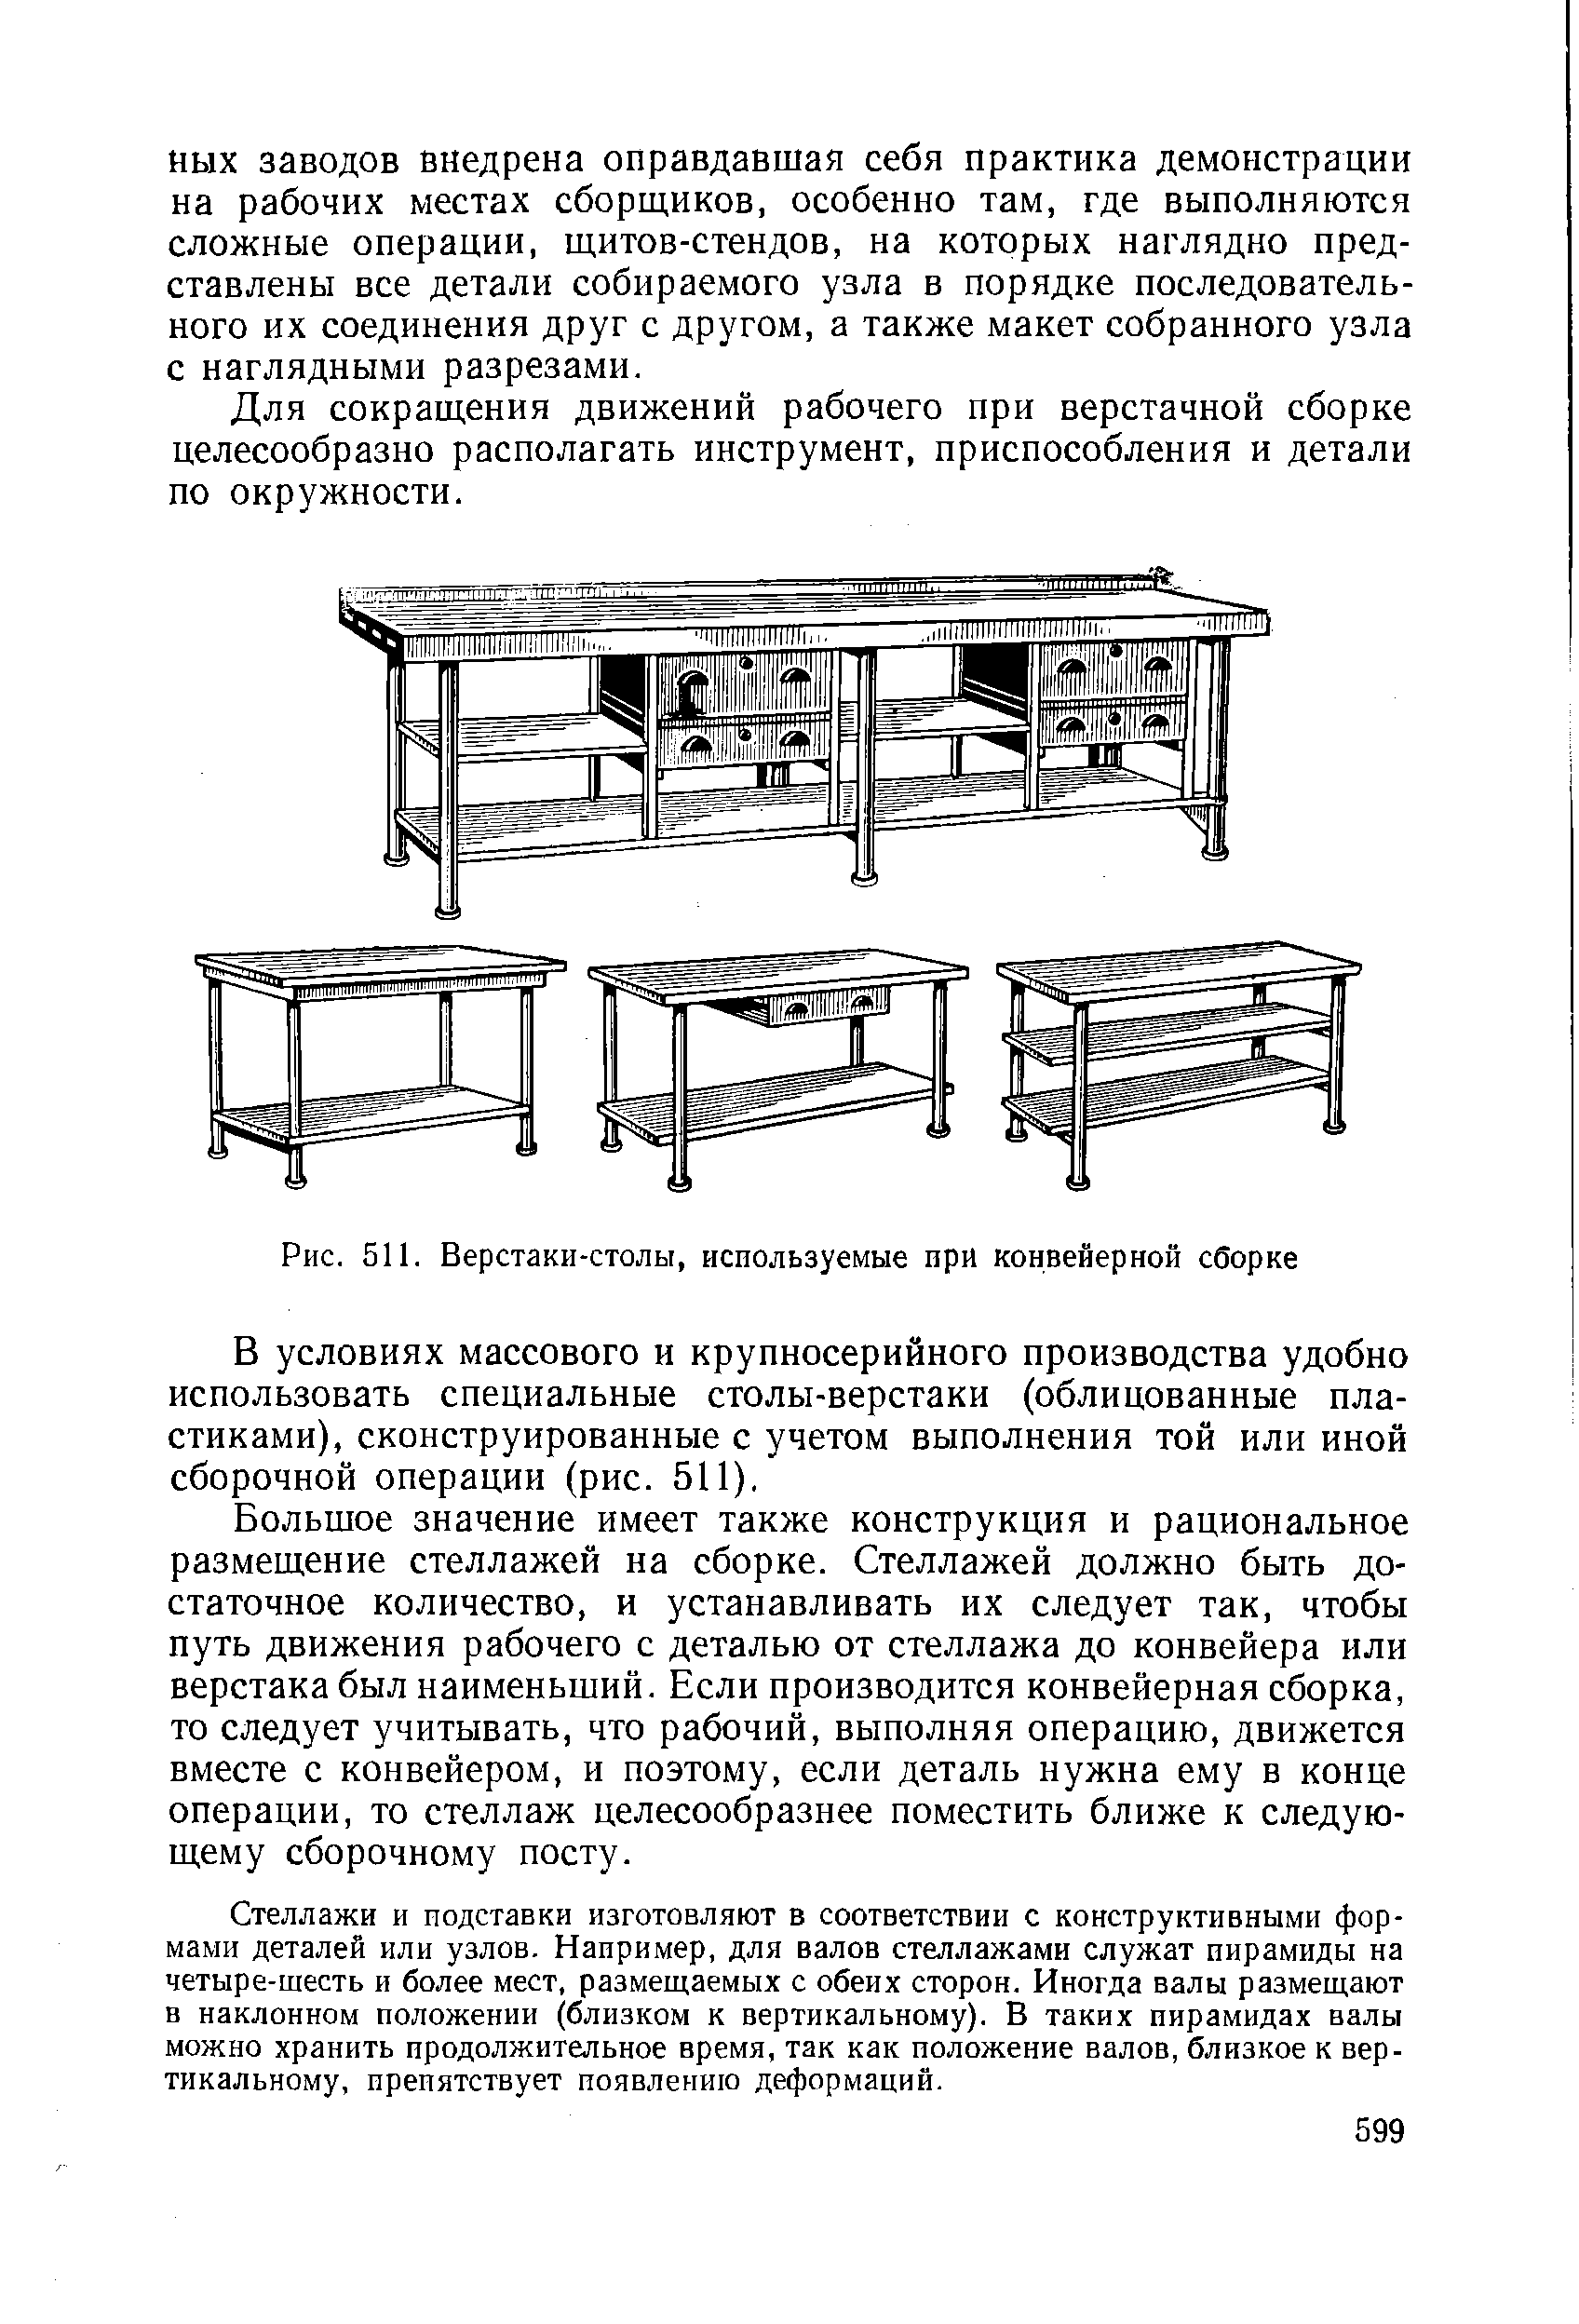 Рис. 511. Верстаки-столы, используемые при конвейерной сборке
